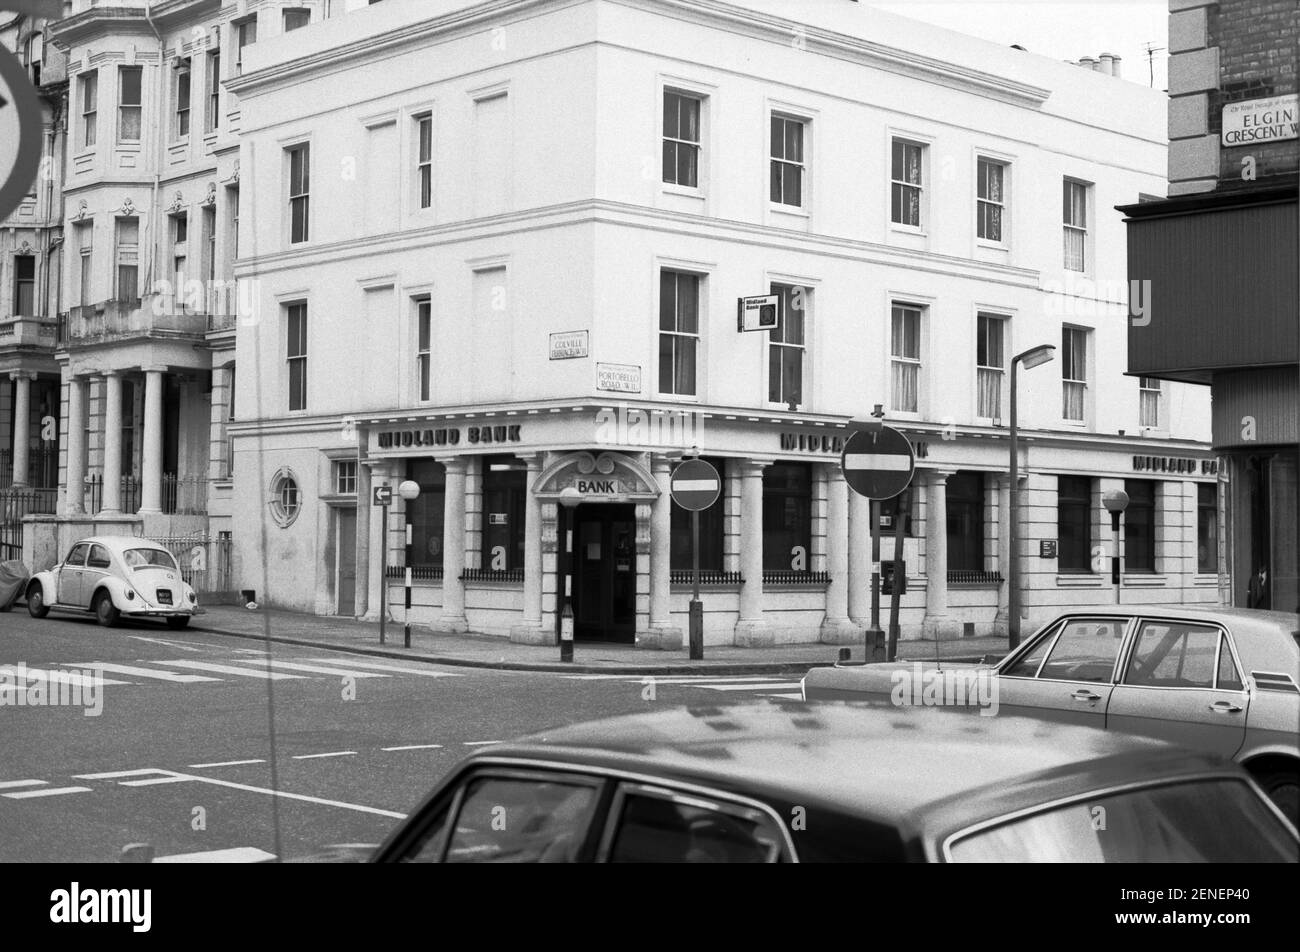 Royaume-Uni, West London, Notting Hill, 1973.Le croissant Elgin rencontre Portobello Road.Colville Terrace en face.La Midland Bank est maintenant fermée. Banque D'Images